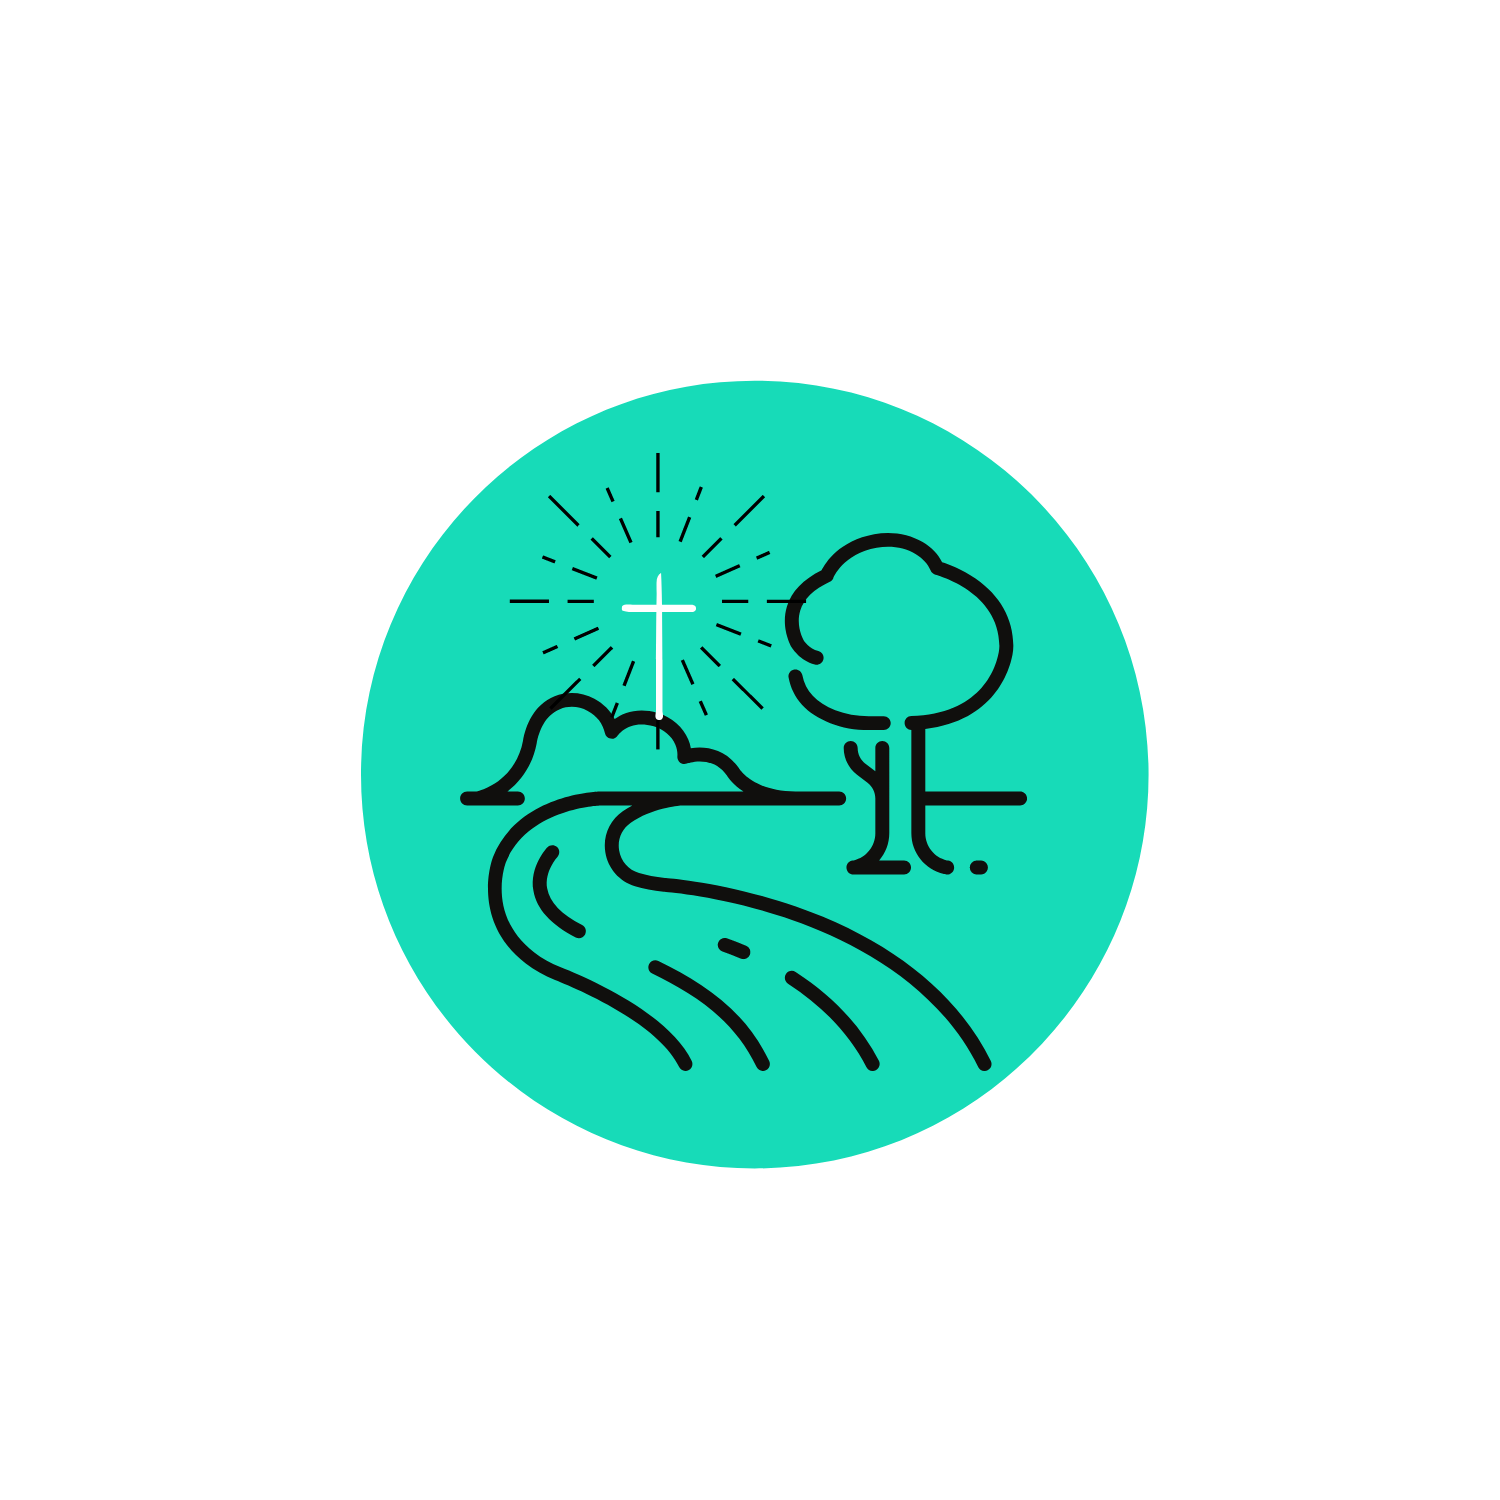 Nidderdale Community Church